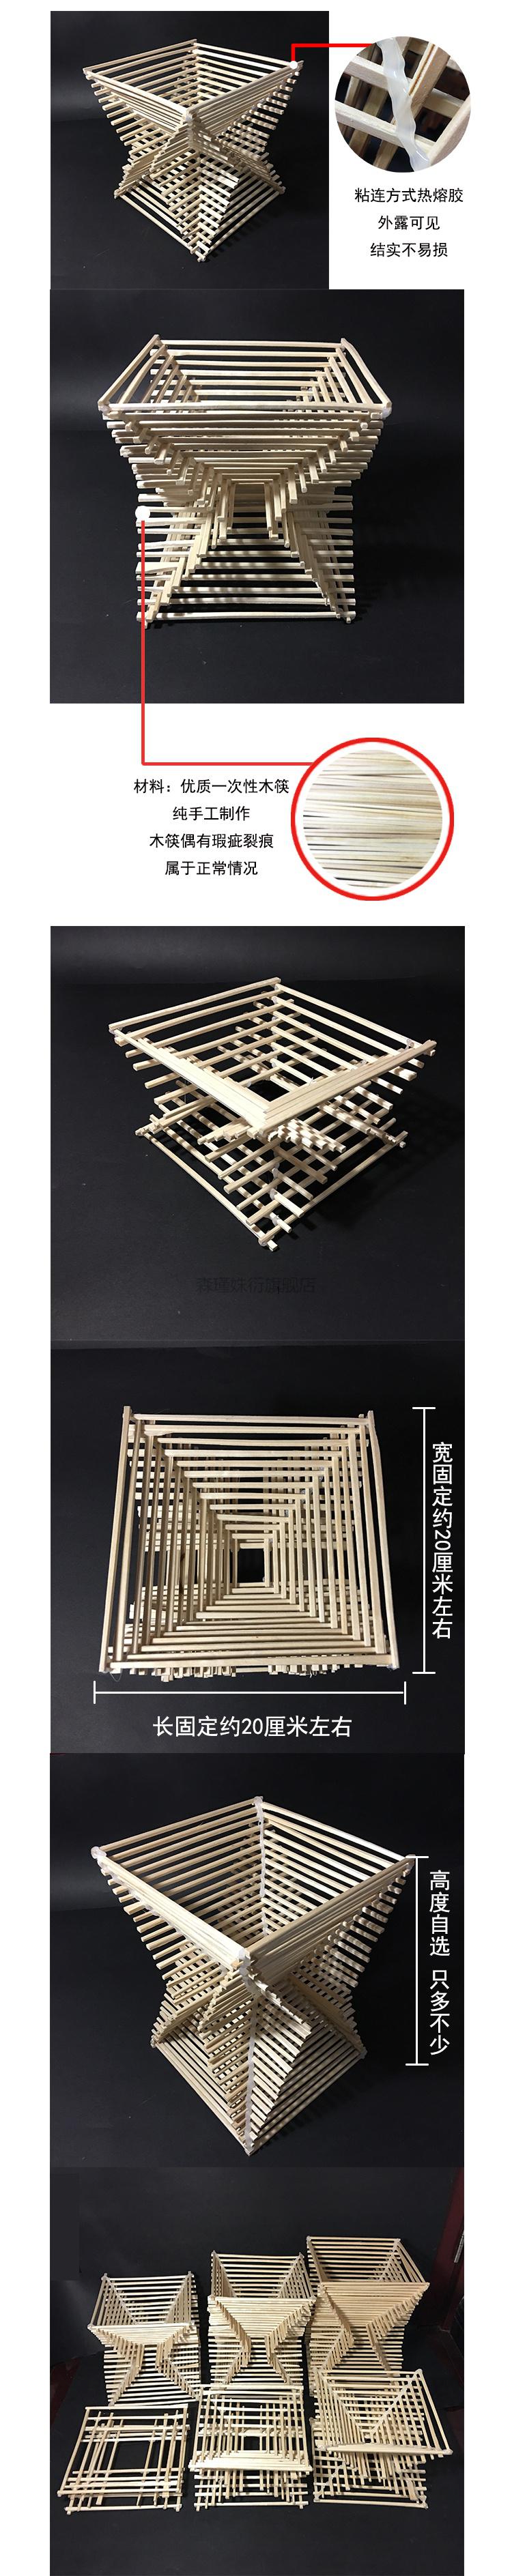 筷子立体构成教程图片